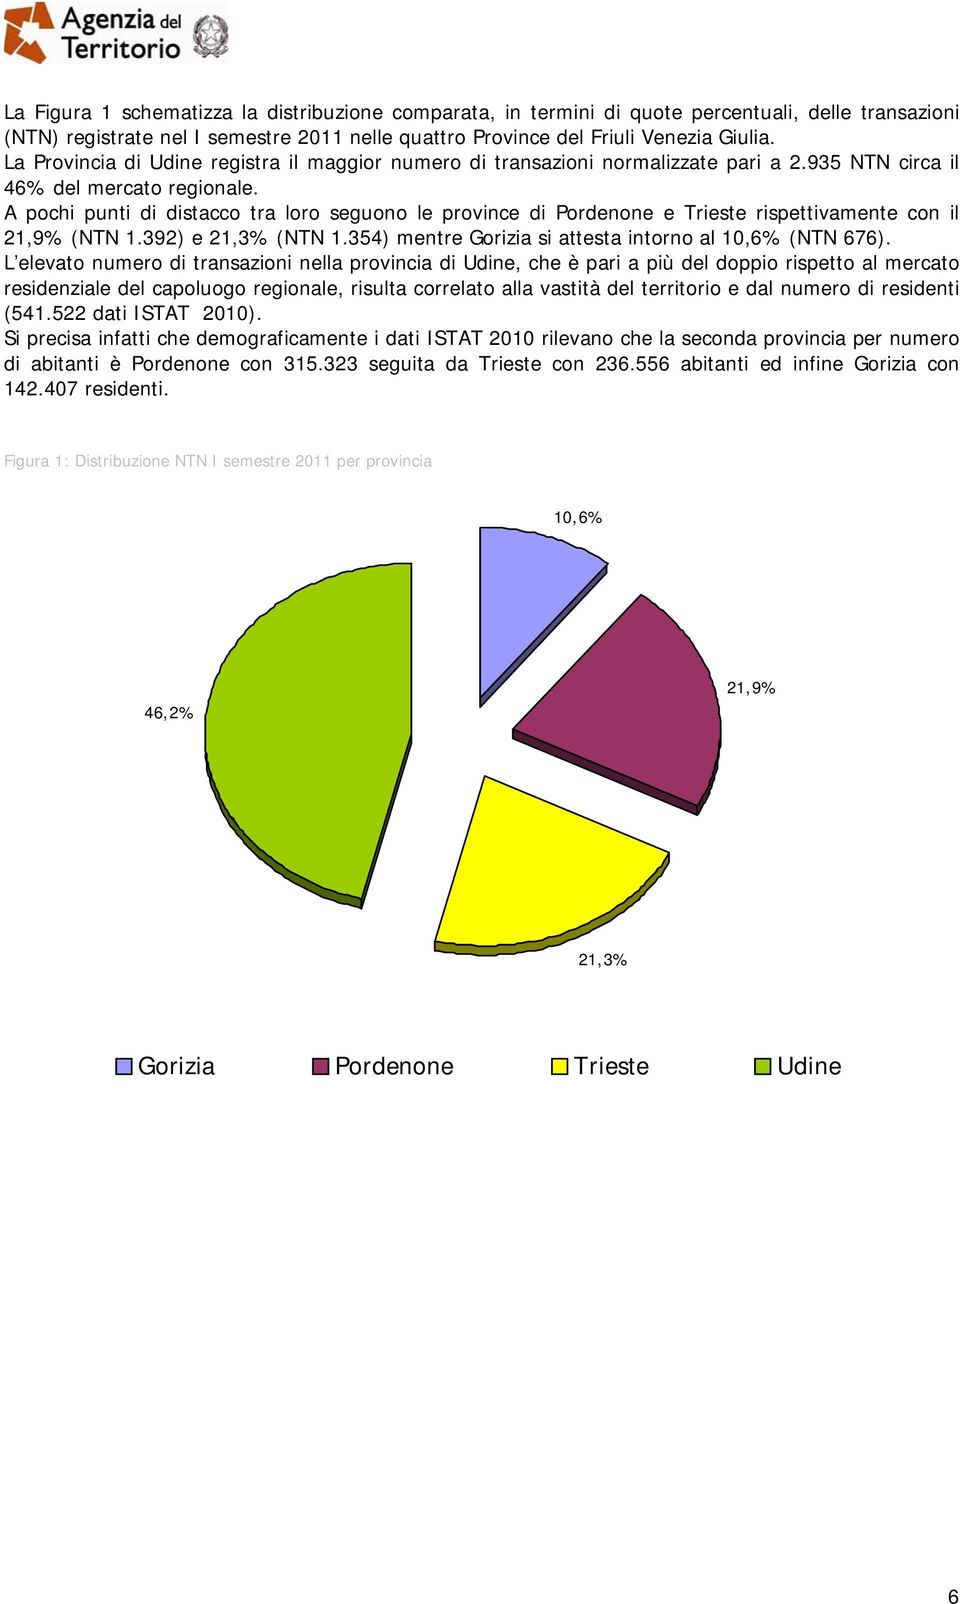 A pochi punti di distacco tra loro seguono le province di Pordenone e Trieste rispettivamente con il 21,9% (NTN 1.392) e 21,3% (NTN 1.354) mentre Gorizia si attesta intorno al 10,6% (NTN 676).